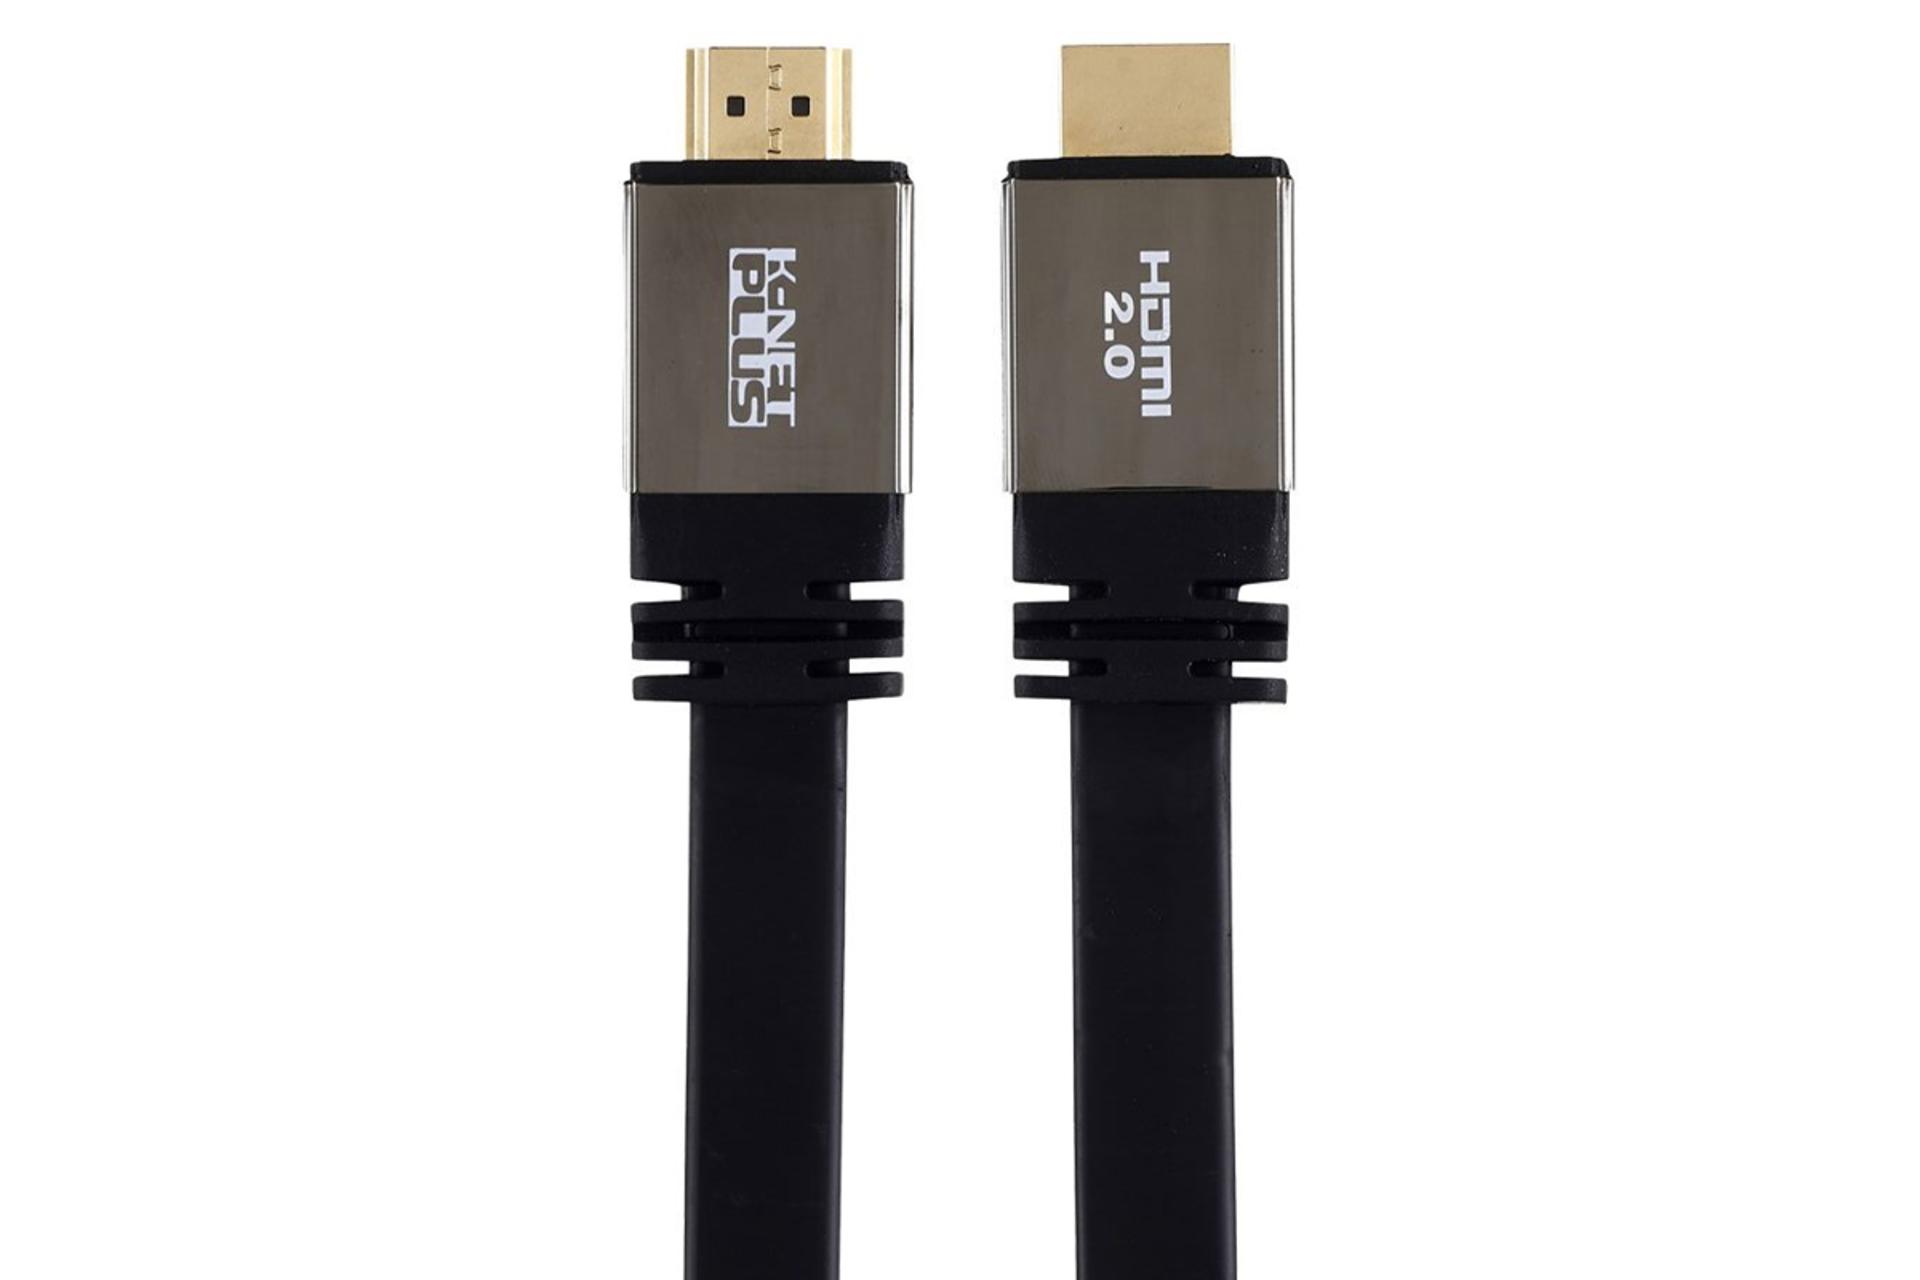 کابل HDMI کی نت پلاس KP-HC163 4K 60Hz نسخه 2.0 با طول 10 متر مشکی